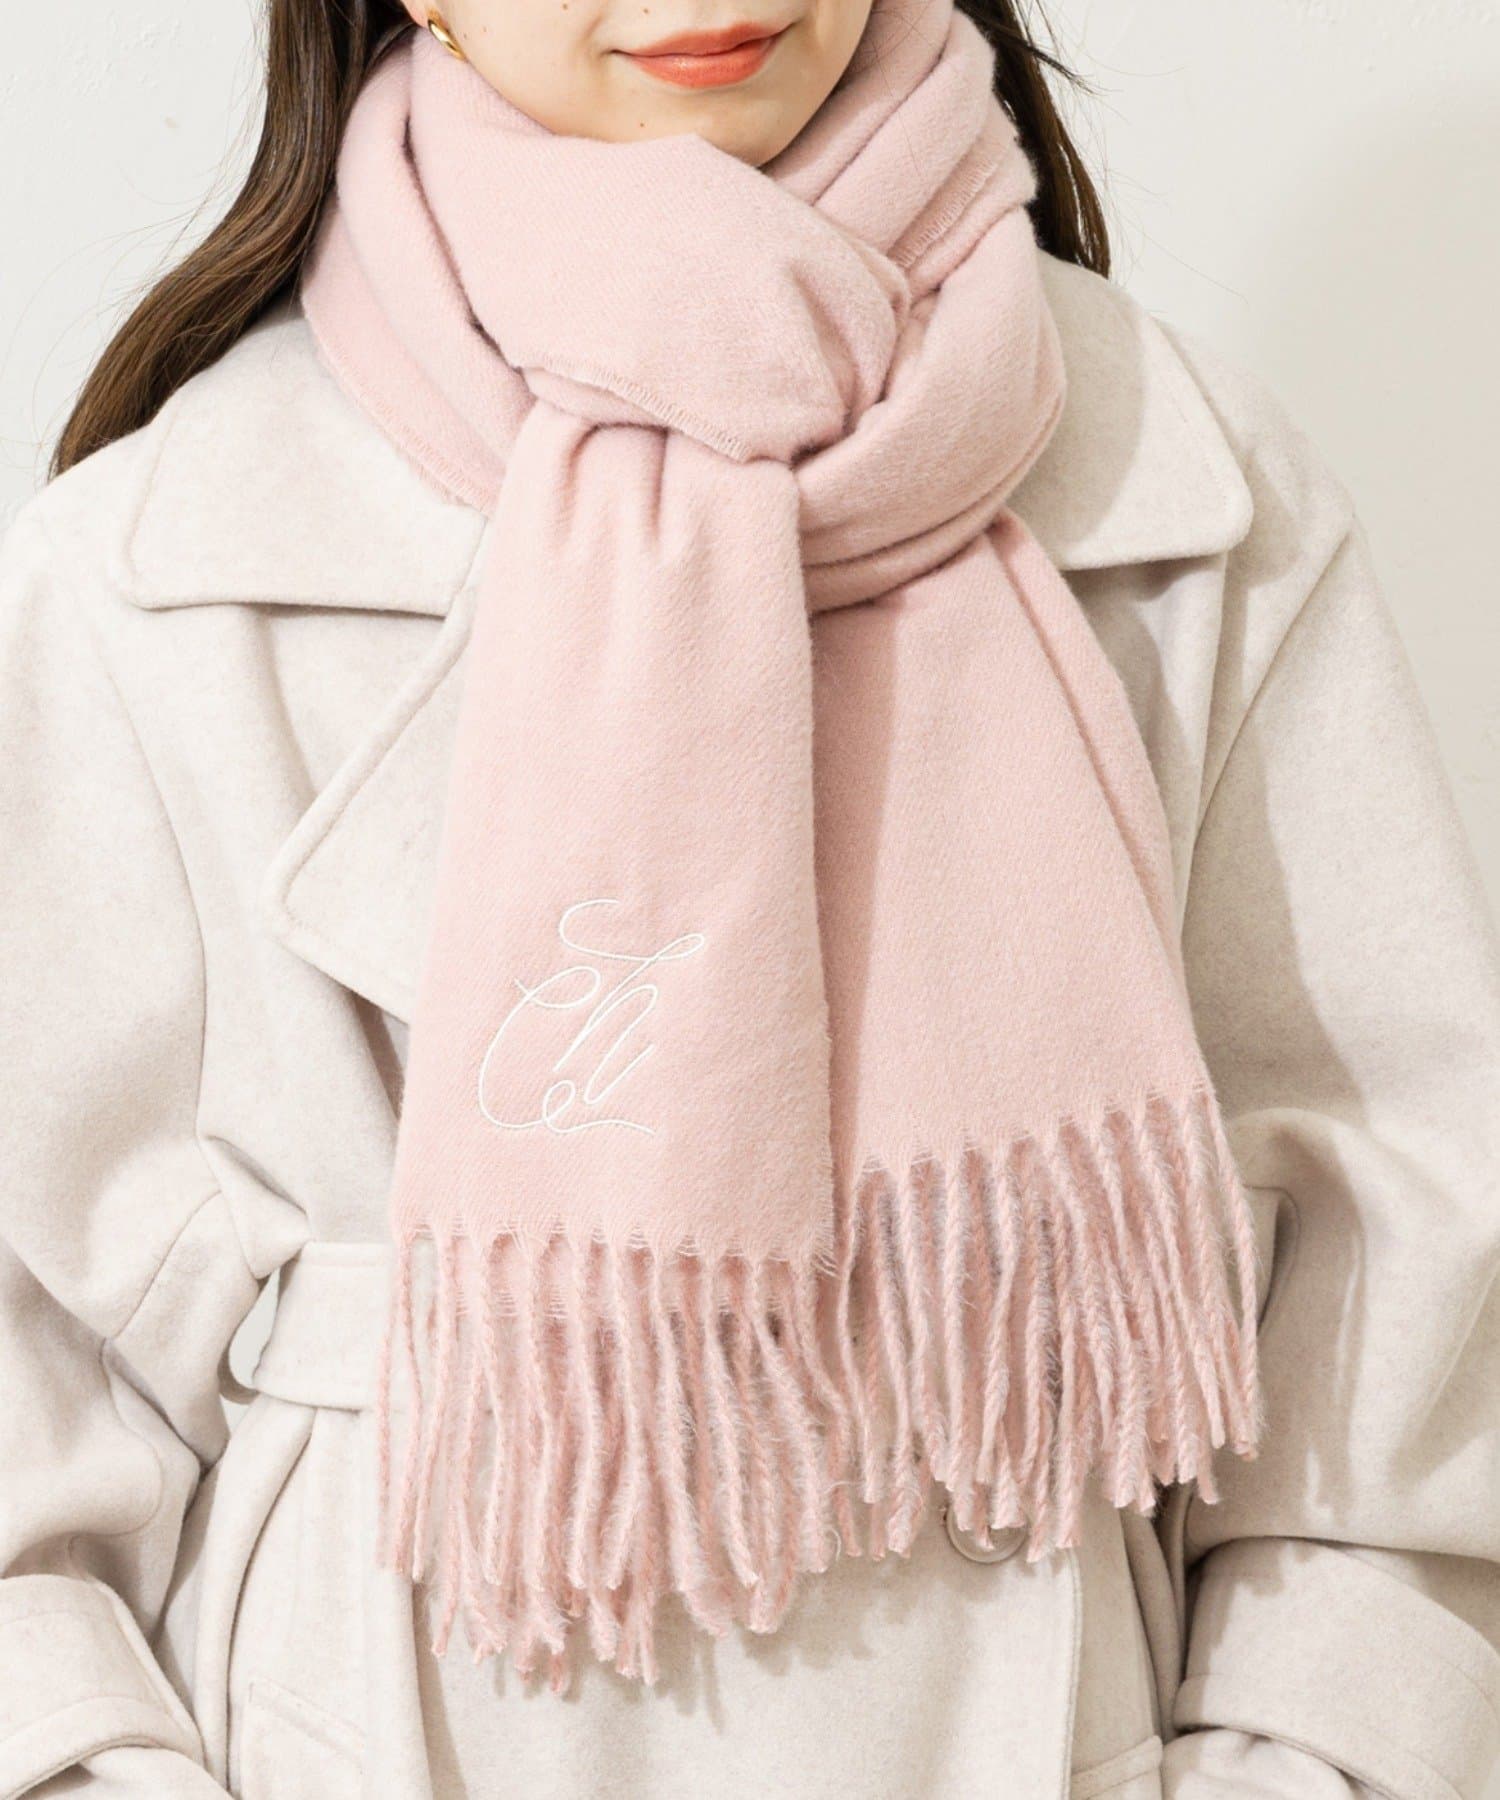 ソルボワ ハンドメイド☆手織りストールマフラー☆新春濃いピンク色系M3005 ファッション雑貨